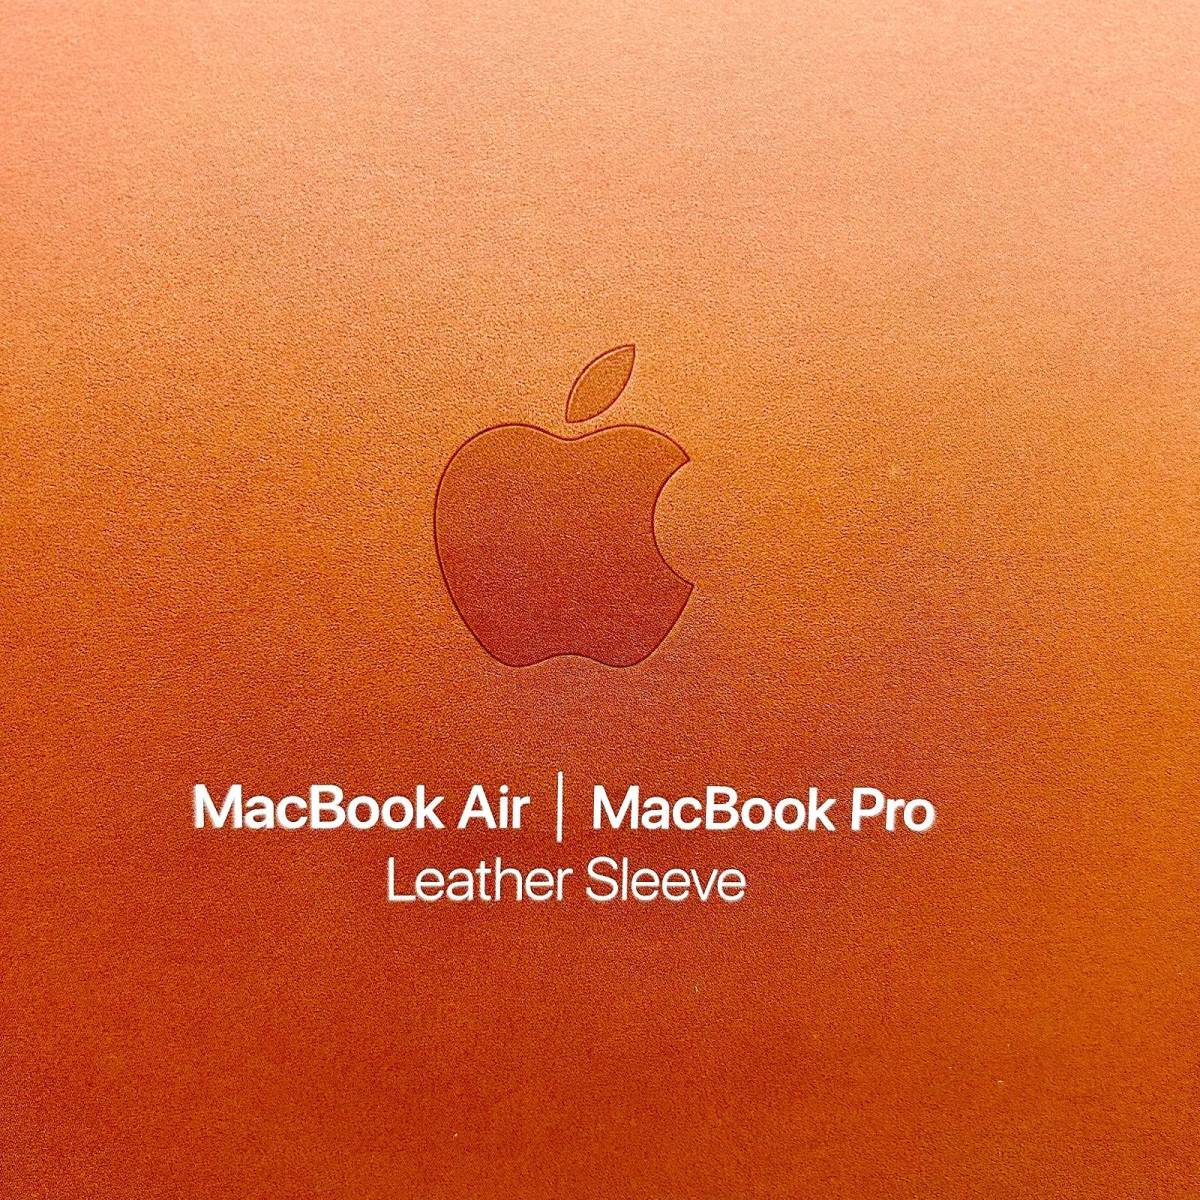 【新品未開封】Apple MacBook Pro / Air用 レザースリーブ 13インチ サドルブラウン 茶色 マックブック エアー プロ カバー アップル_画像2